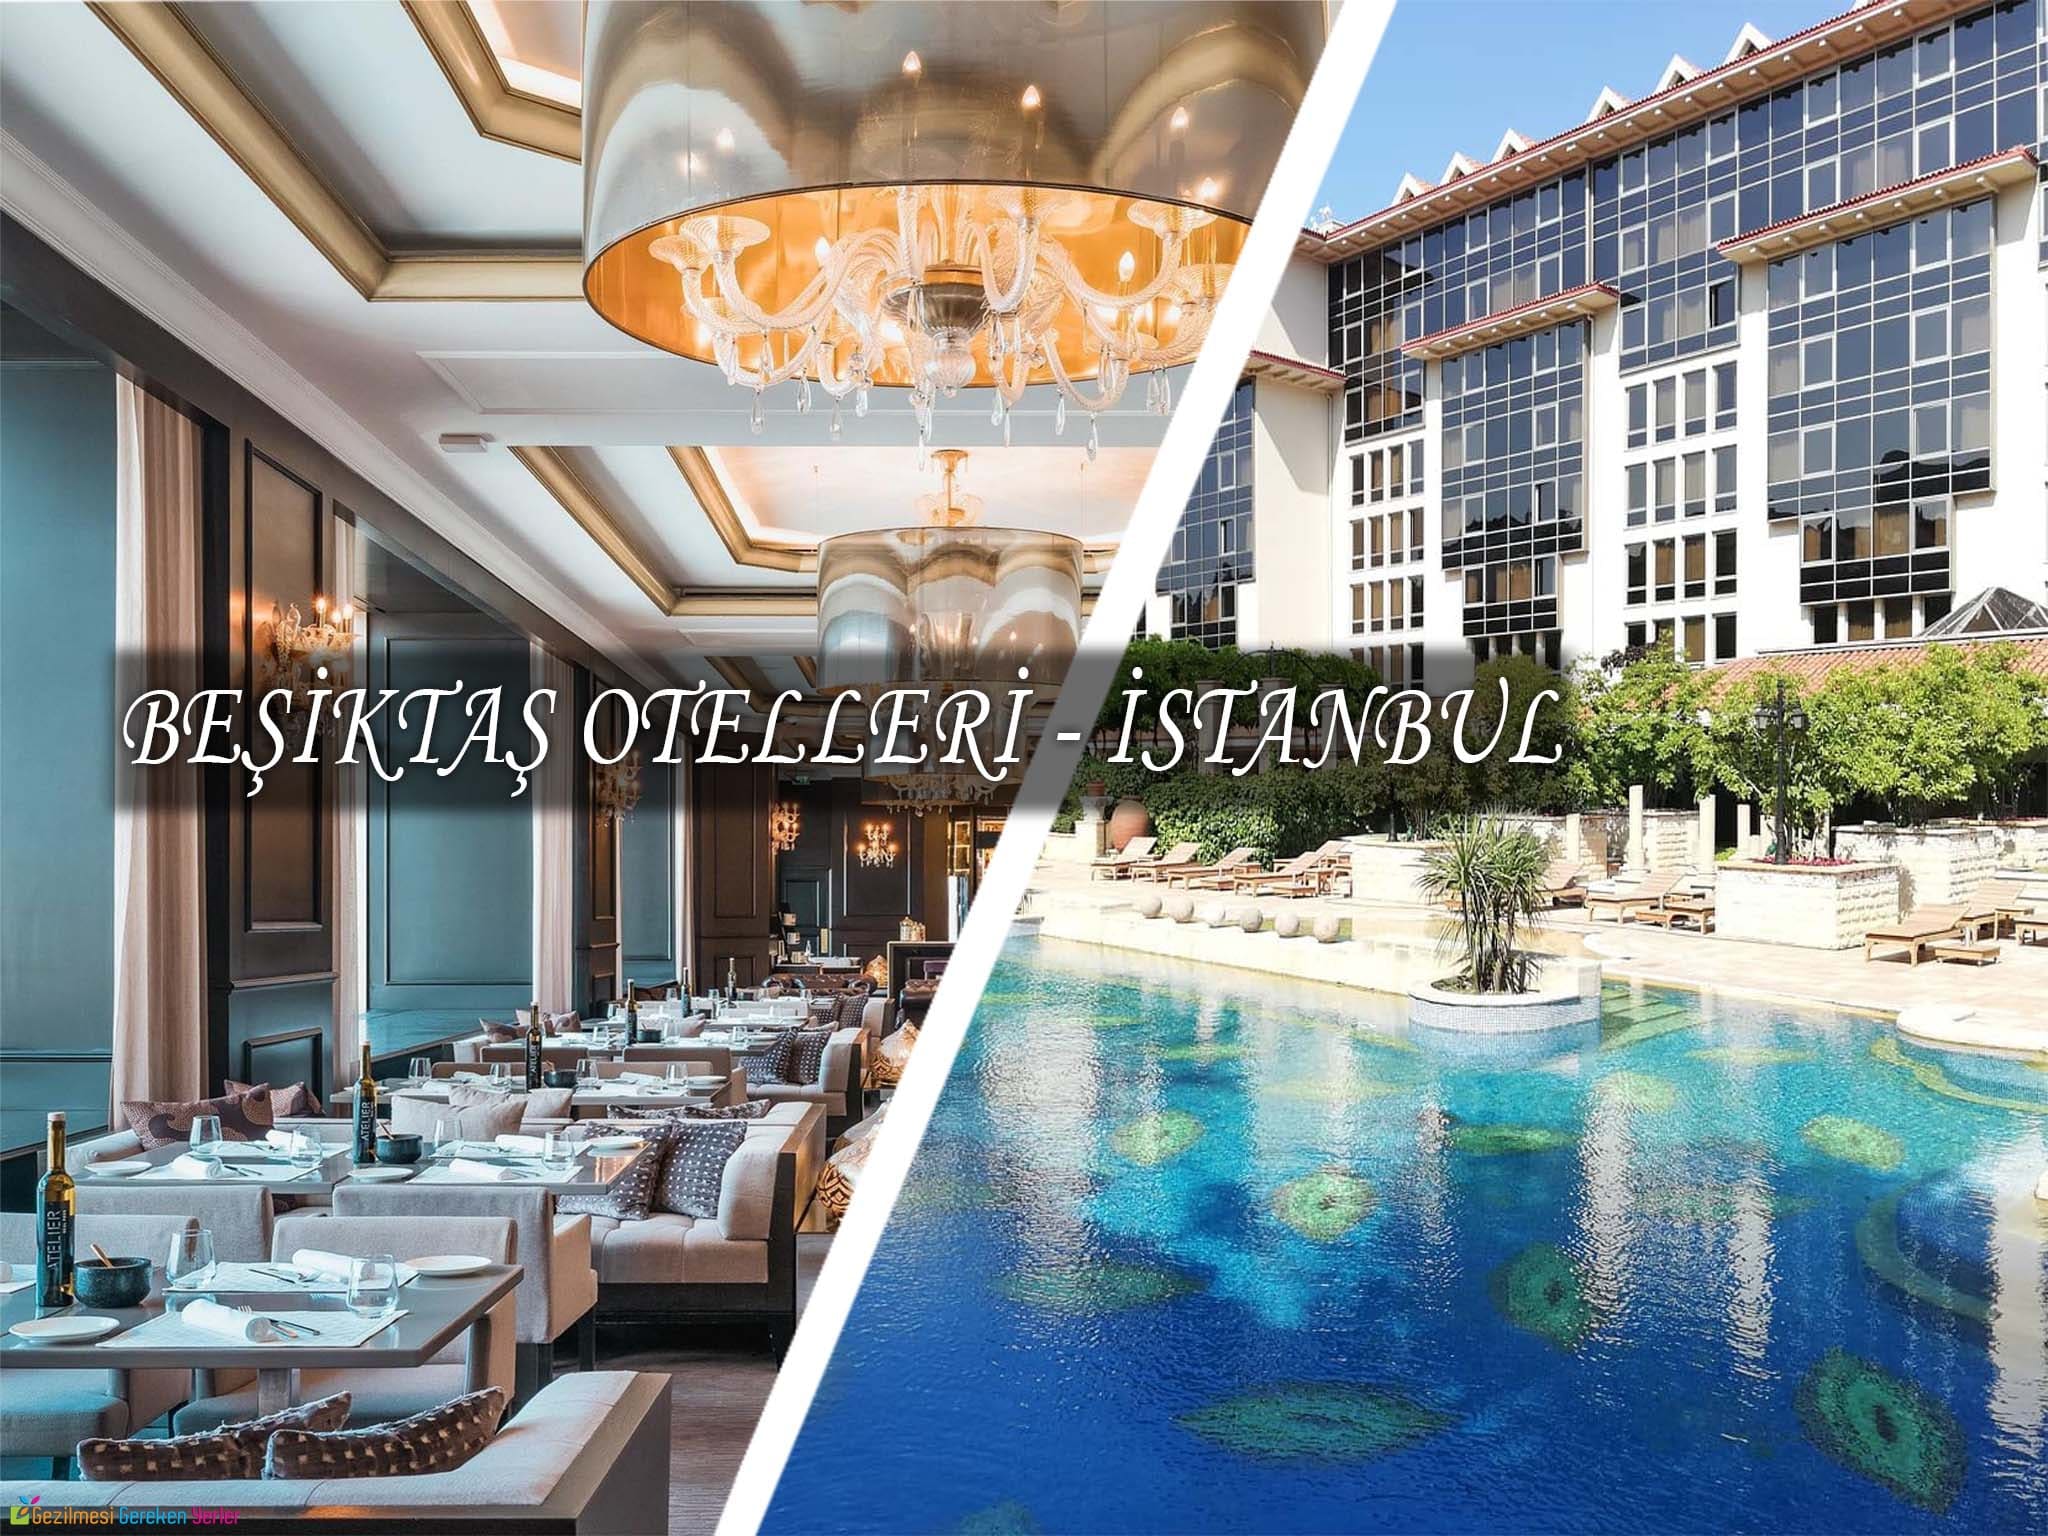 besiktas otelleri istanbul daki en iyi 10 otelin fiyatlari